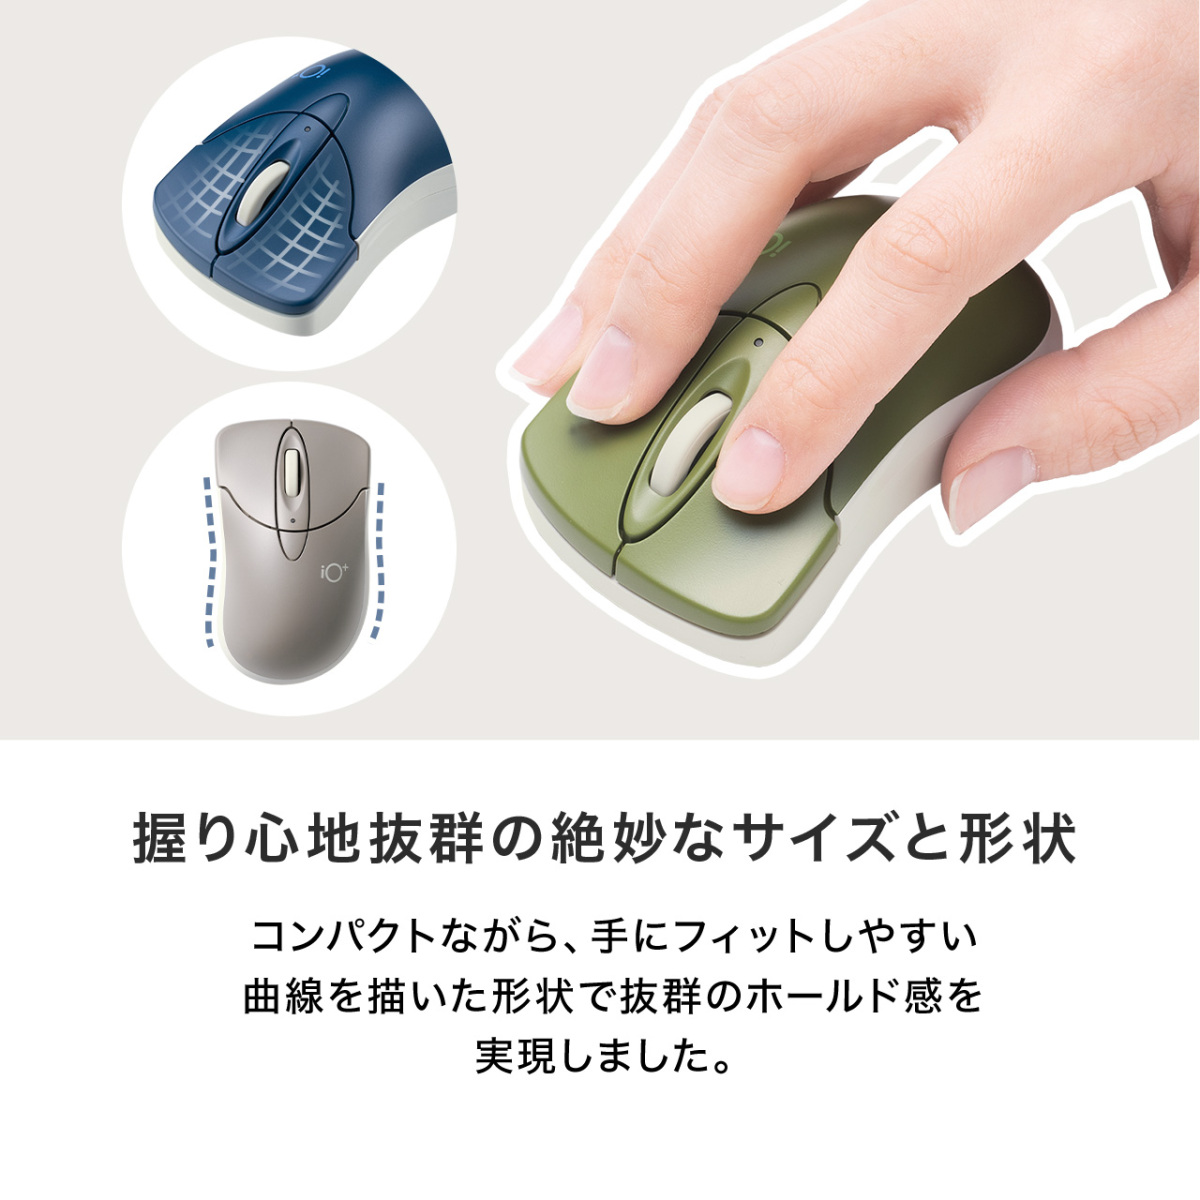 マウス Bluetooth ワイヤレス 無線 静音 マルチペアリング 小型 コンパクト カウント切り替え かわいい おしゃれ 400-MABTIP3